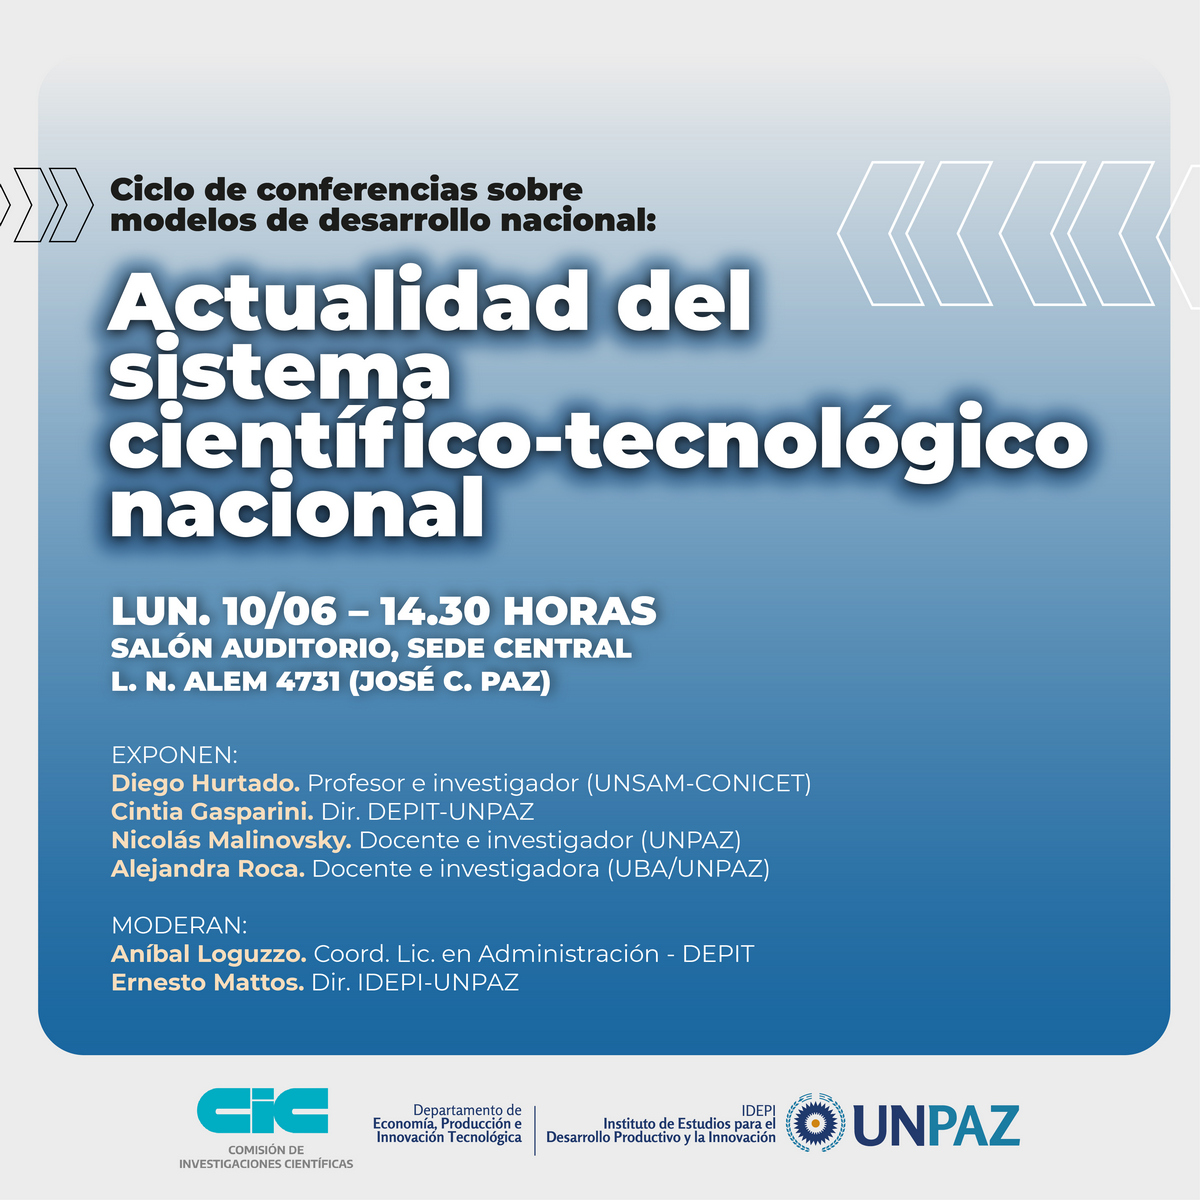 Charla abierta “Actualidad del sistema científico-tecnológico nacional” - Ciclo de conferencias sobre modelos de desarrollo nacional